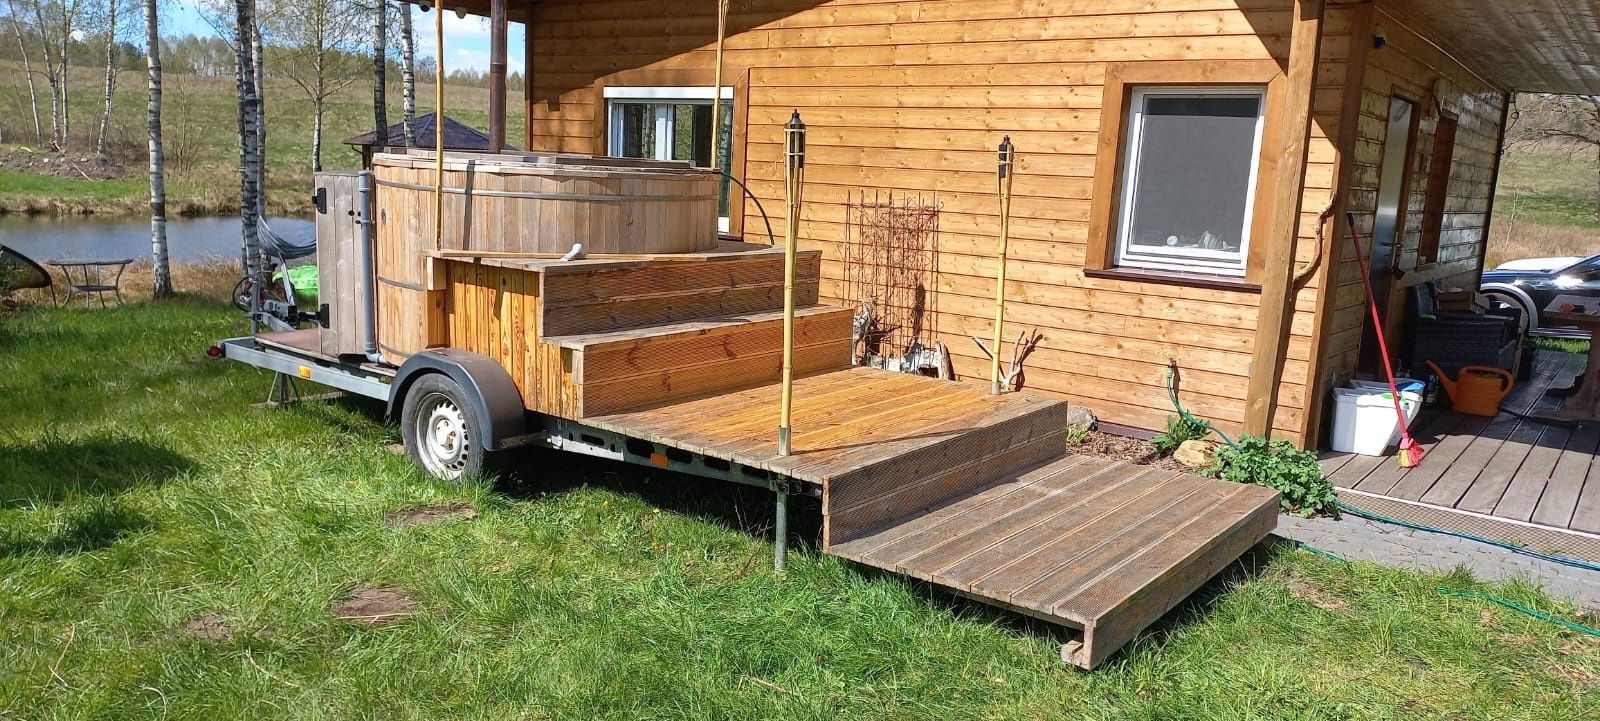 Mobilna balia i sauna ogrodowa